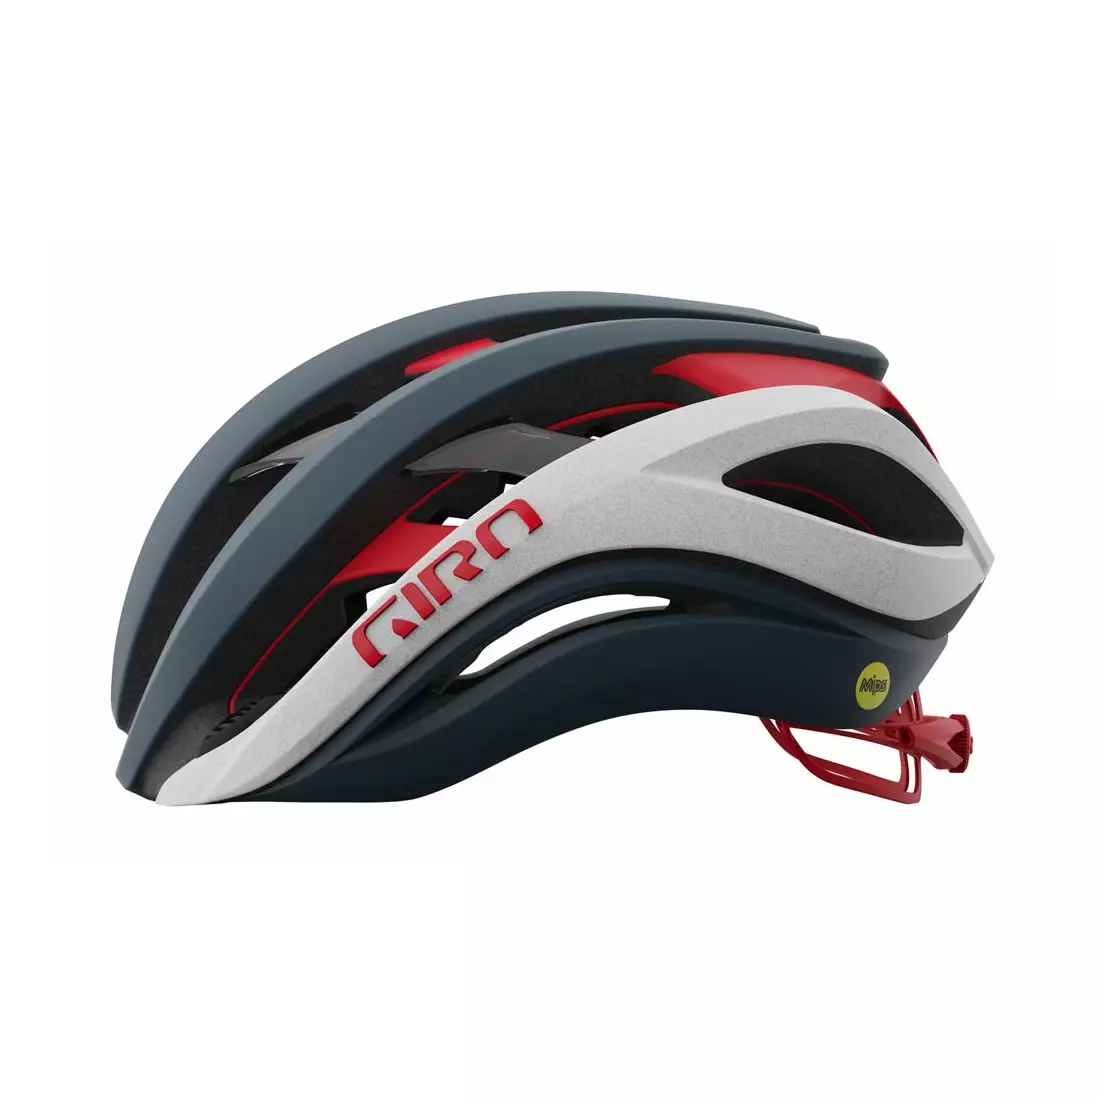 GIRO road bike helmet AETHER SPHERICAL MIPS matte portaro gray white red GR-7129107